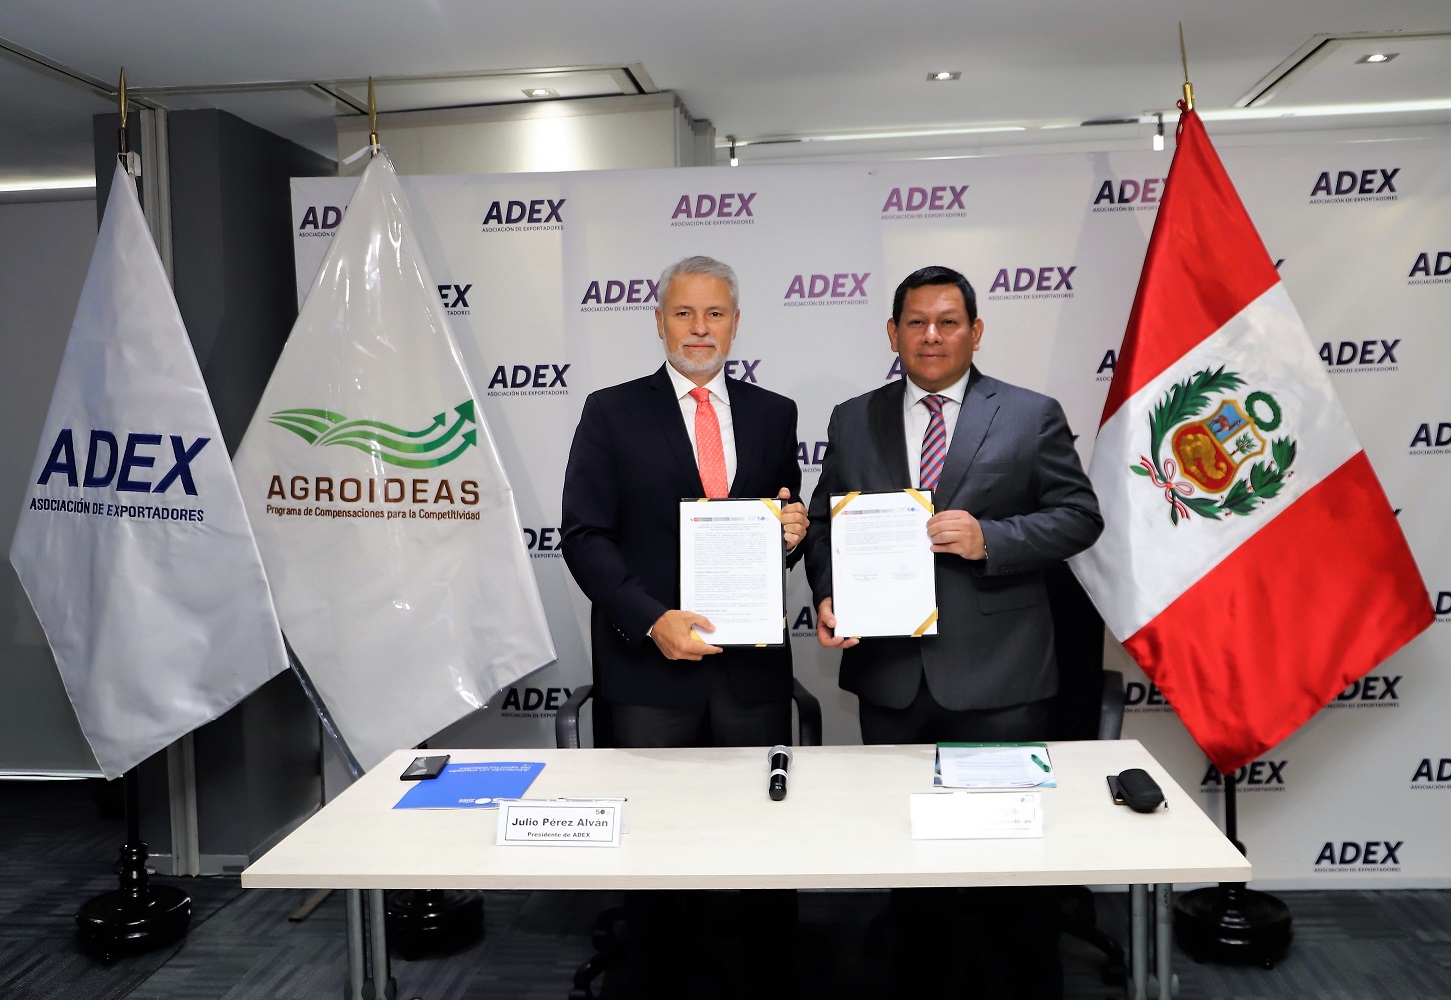 ADEX y Agroideas firman convenio de colaboración institucional, pequeños y medianos productores se sumarán a la cadena exportadora.